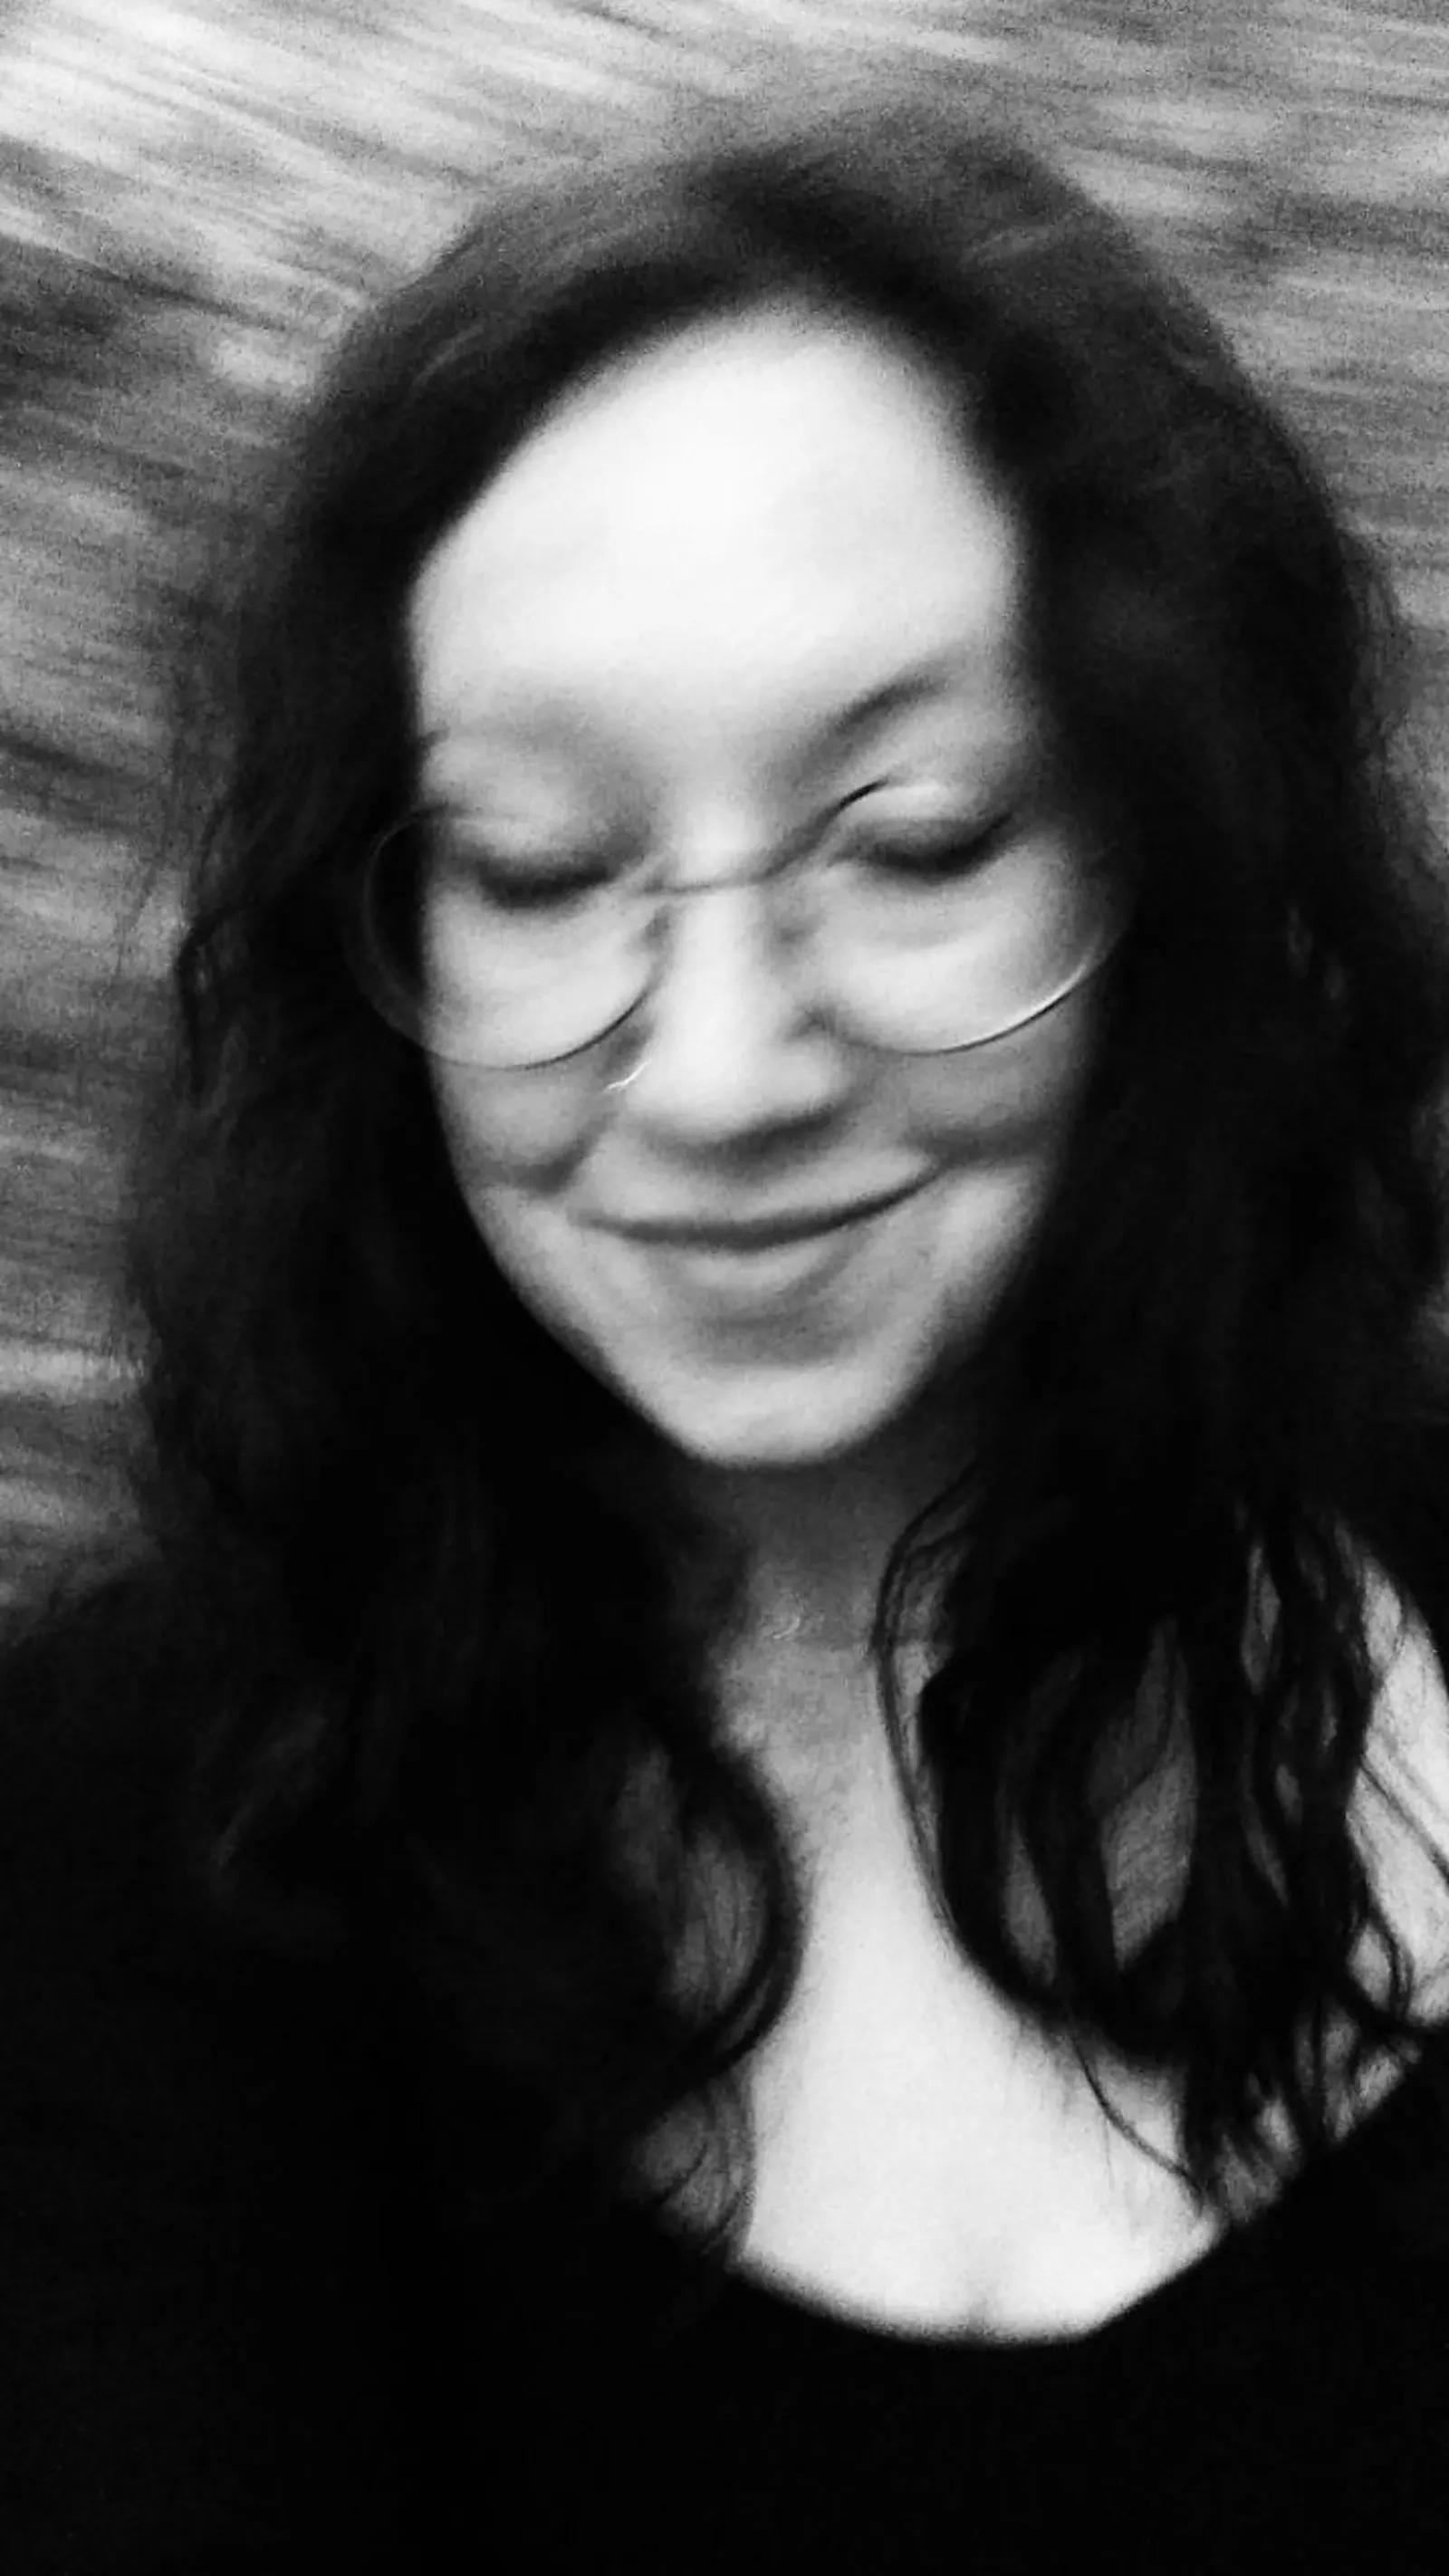 Schwarz-weiß Fotografie, verwackelt. Eine Frau senkt den Blick, sie trägt eine Brille und die dunklen Haare offen. Im Hintergrund sind Bäume und Sträucher.